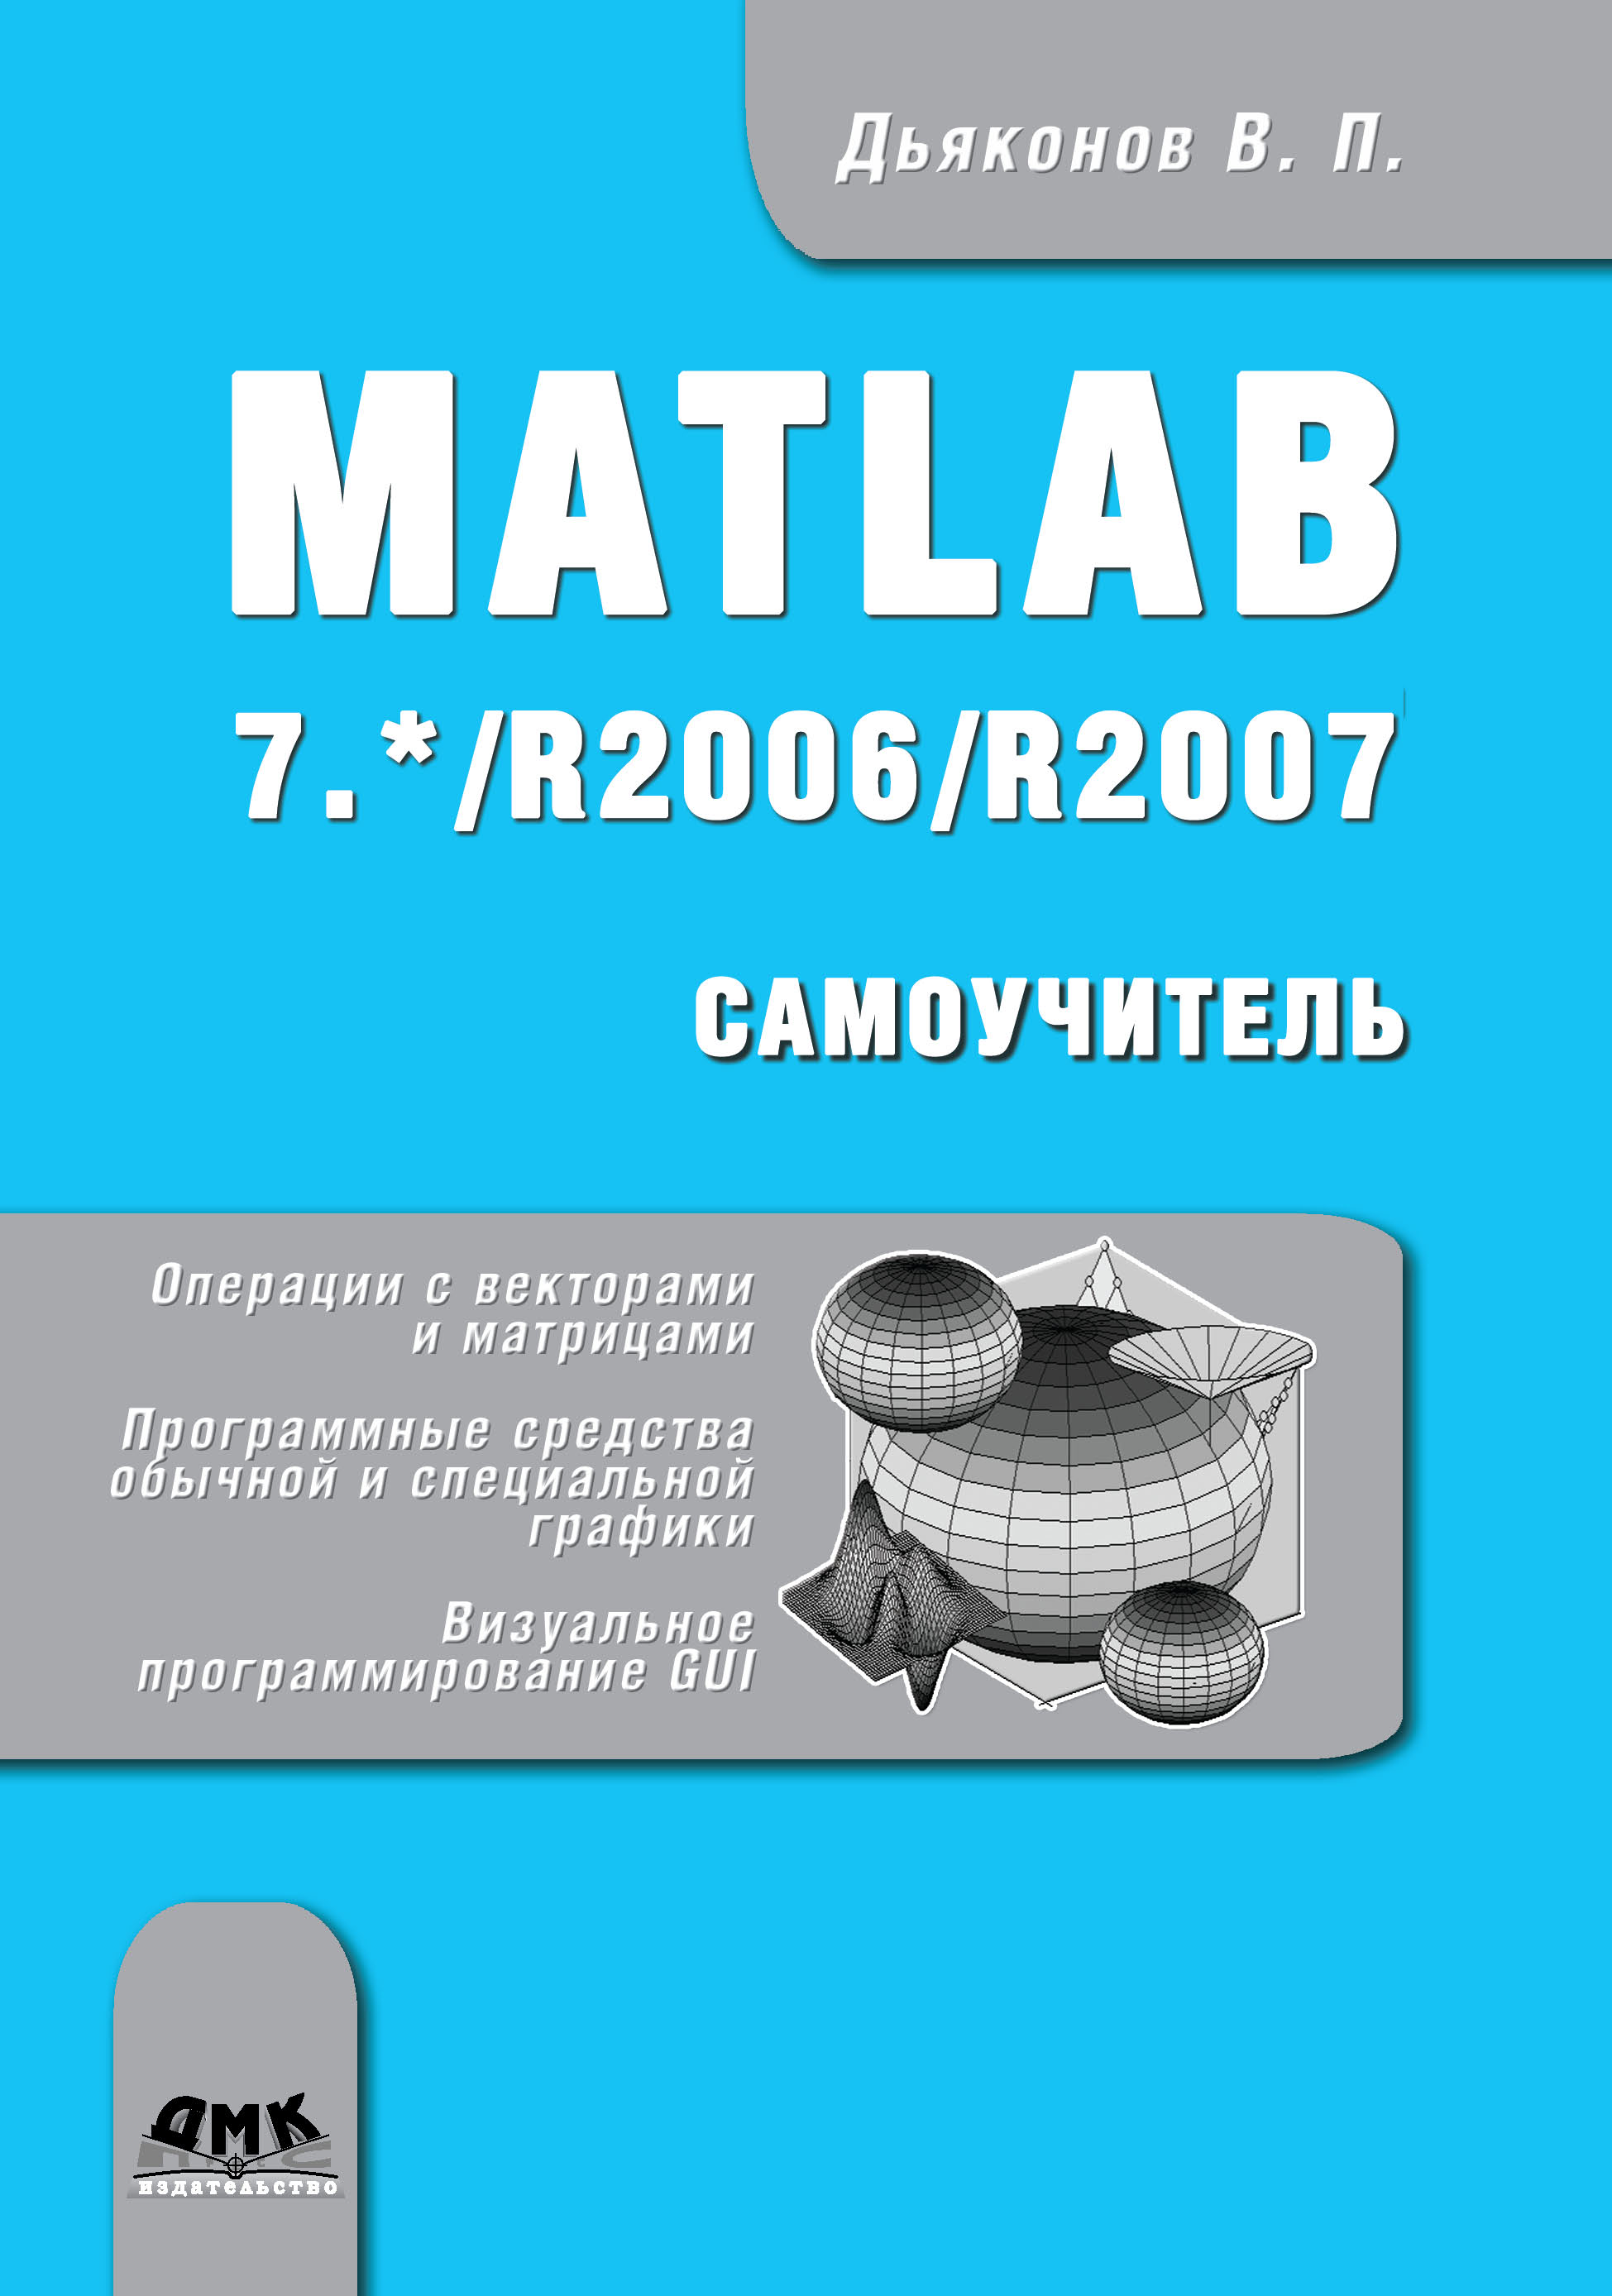 Книга  Matlab 7.*/R2006/R2007 созданная В. П. Дьяконов может относится к жанру программы, самоучители. Стоимость электронной книги Matlab 7.*/R2006/R2007 с идентификатором 48411343 составляет 349.00 руб.